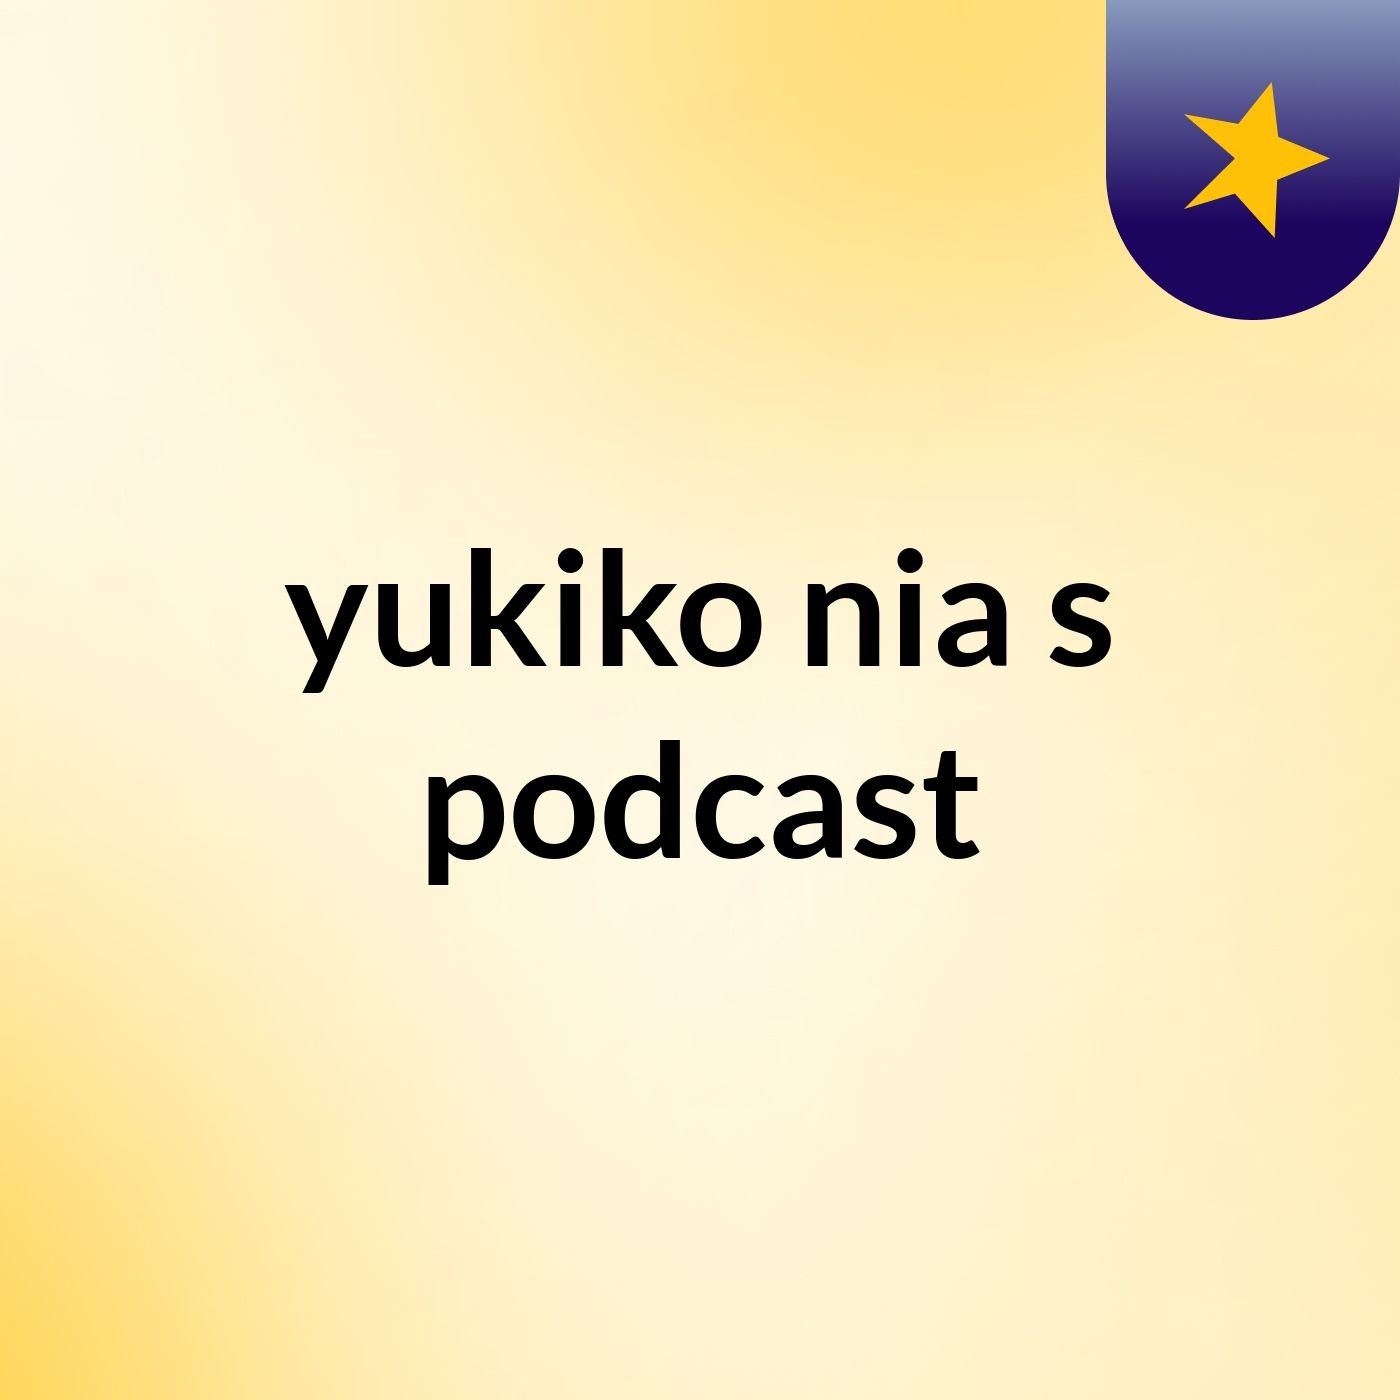 Episode 2 - yukiko nia's podcast